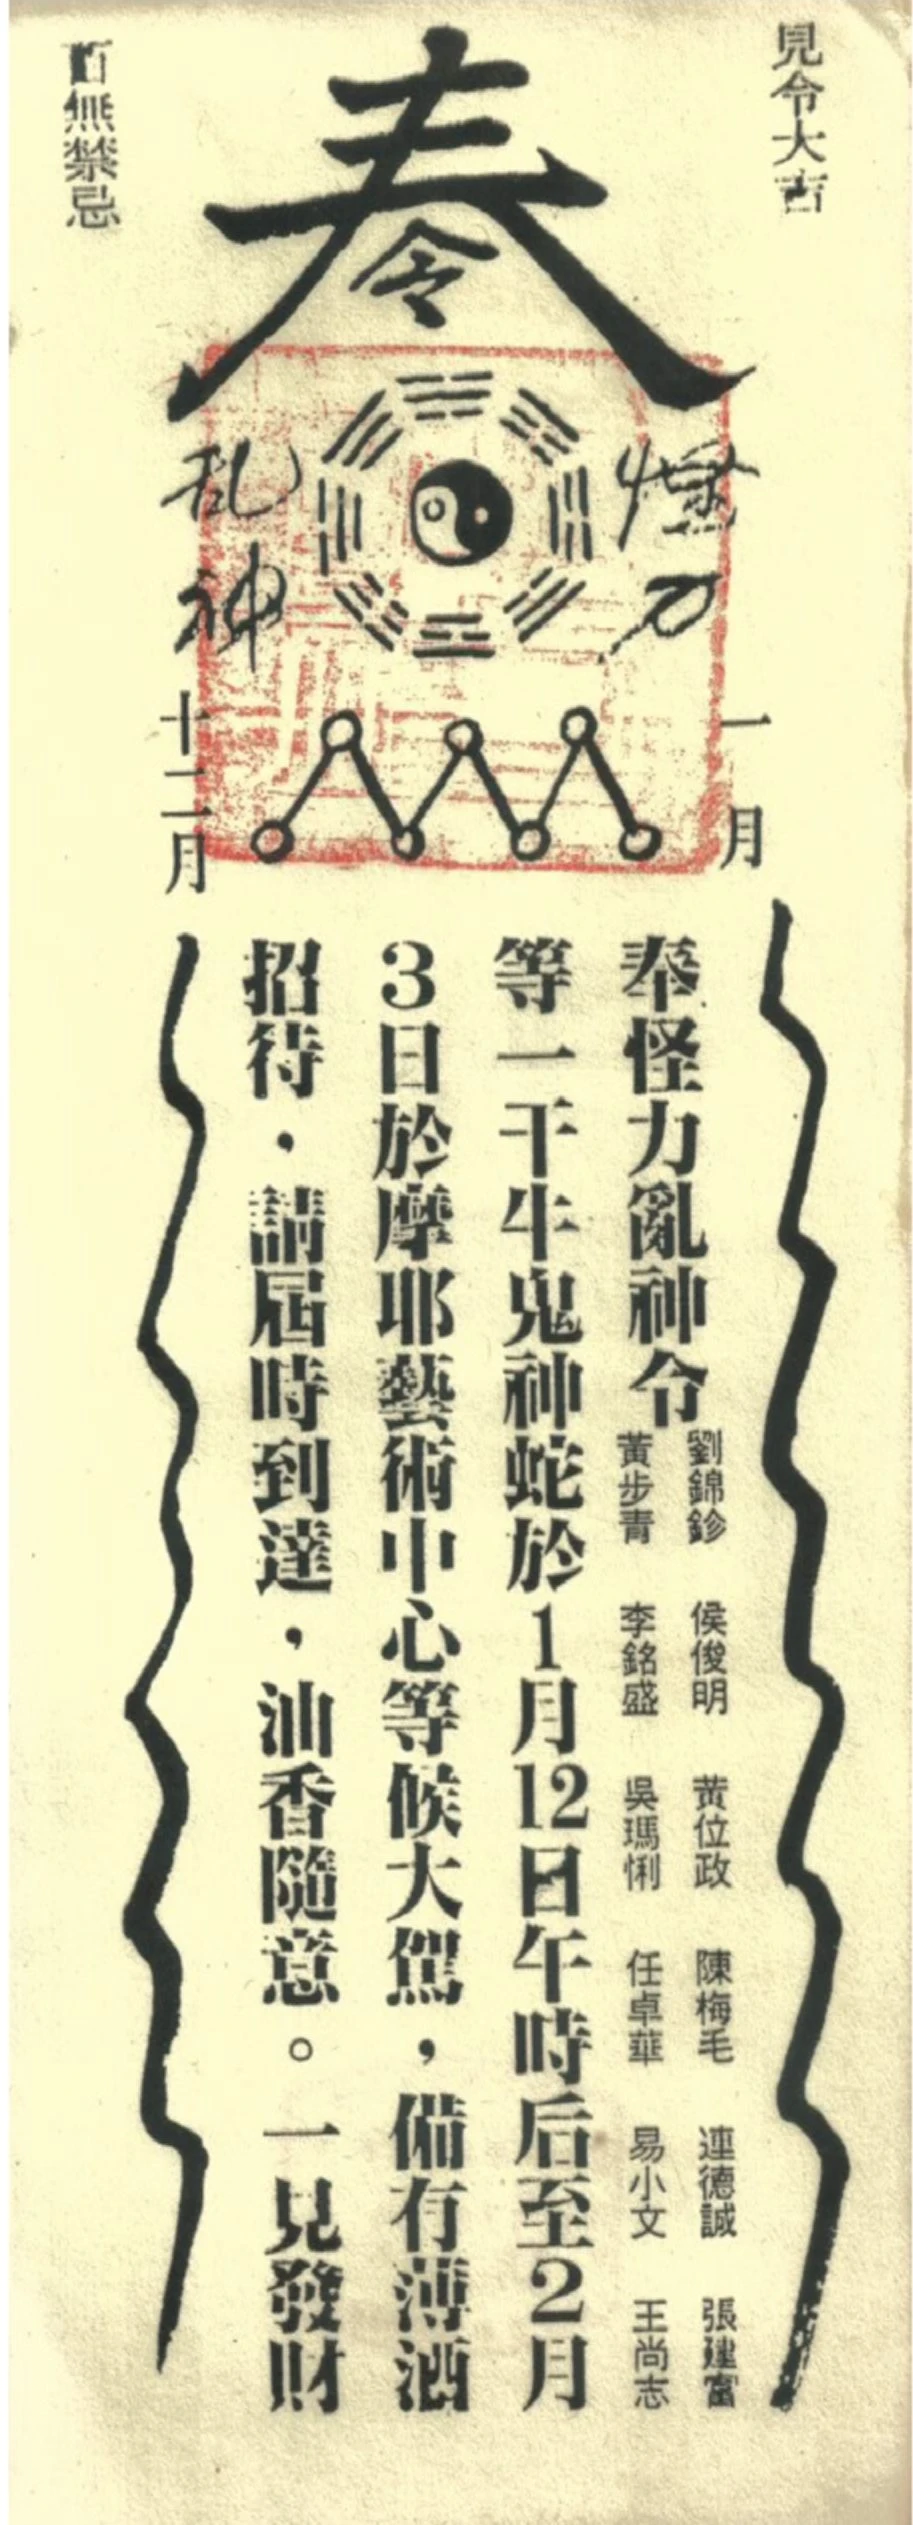 「台灣檔案室」第二次展覽「怪力亂神」之邀請卡，由吳瑪悧策展，於摩耶藝術中心展出，1991 ©吳瑪悧提供-圖片